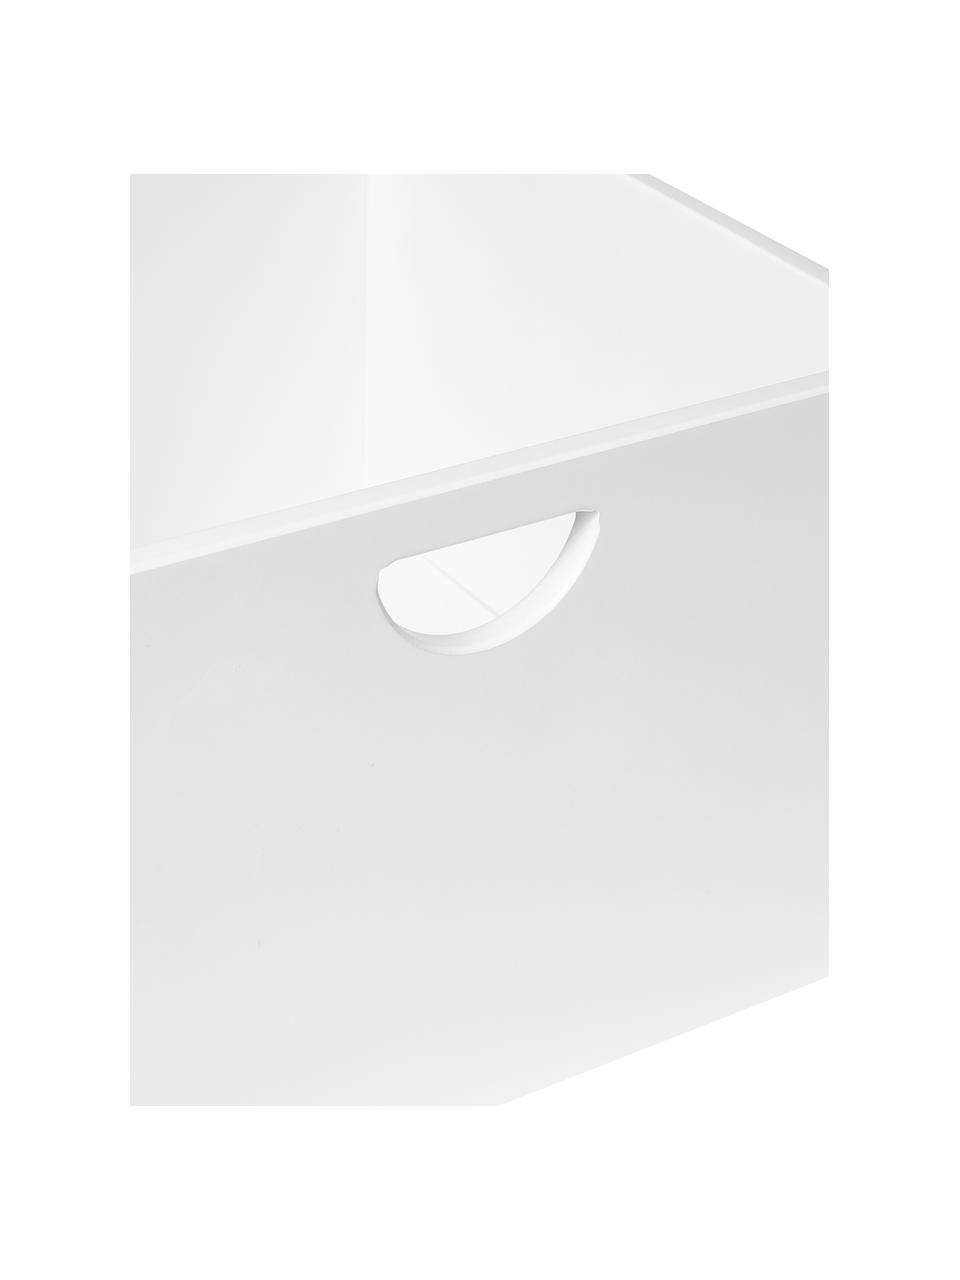 Wkład do szafki Nunila, 2 szt., Płyta pilśniowa średniej gęstości (MDF) lakierowana, Biały, S 36 x W 25 cm